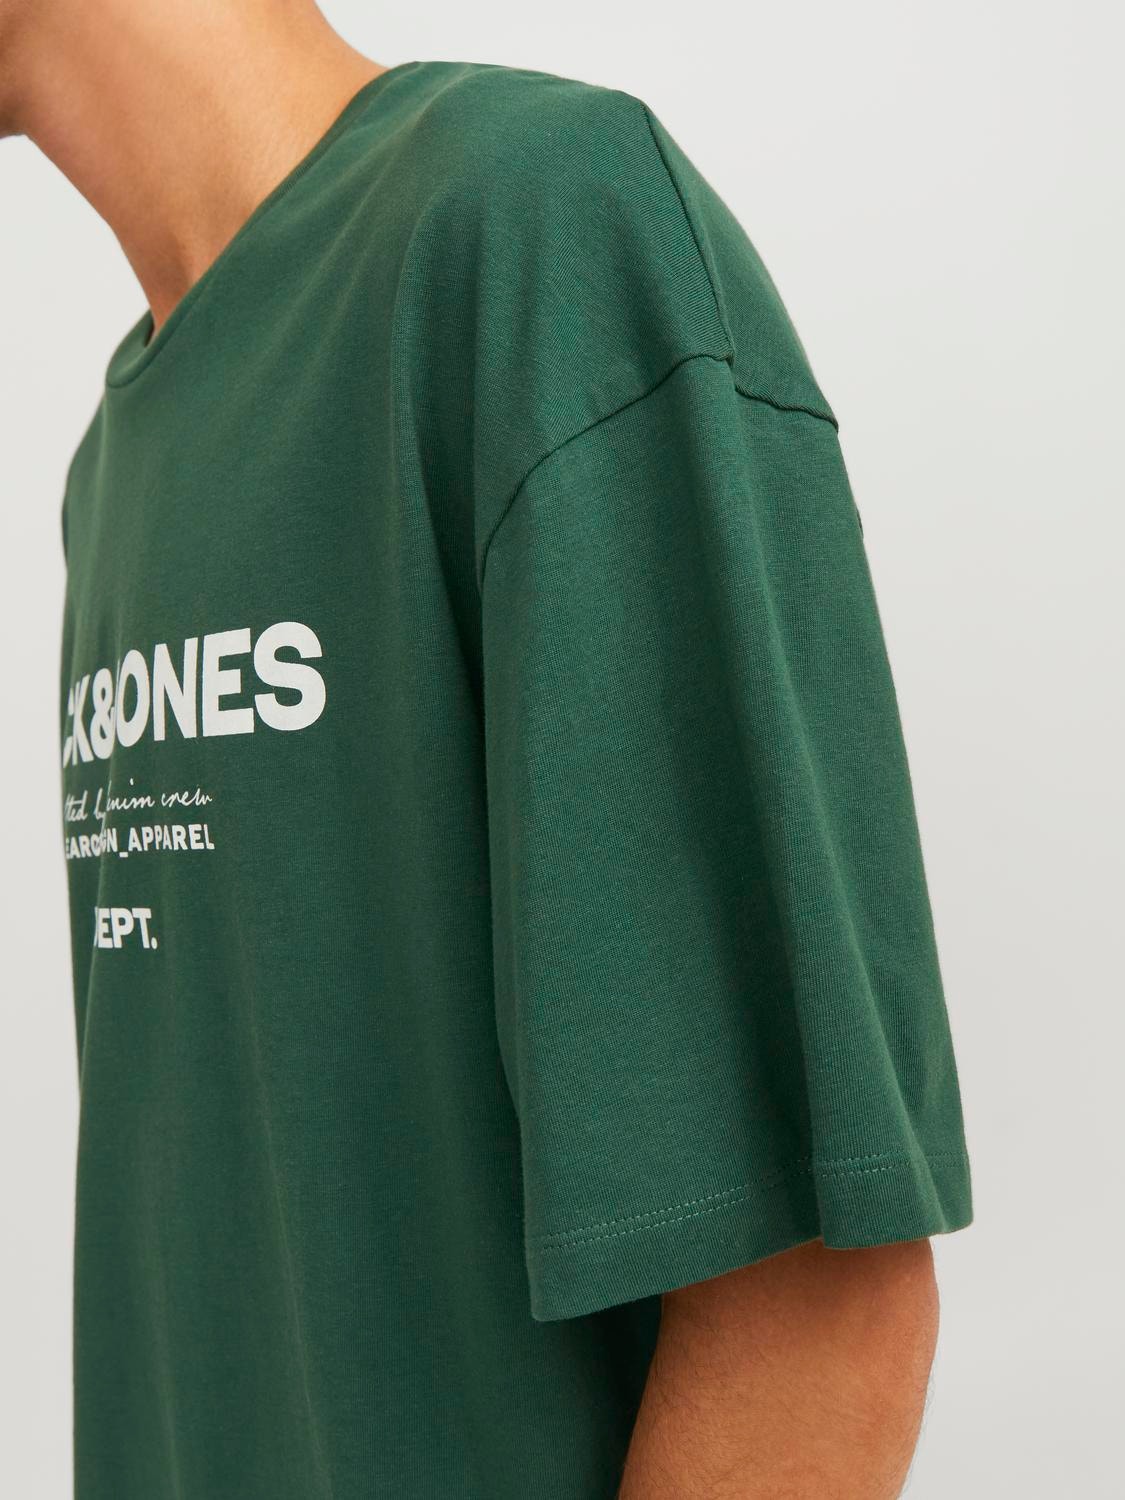 Jack & Jones Logo Pyöreä pääntie T-paita -Dark Green - 12247782